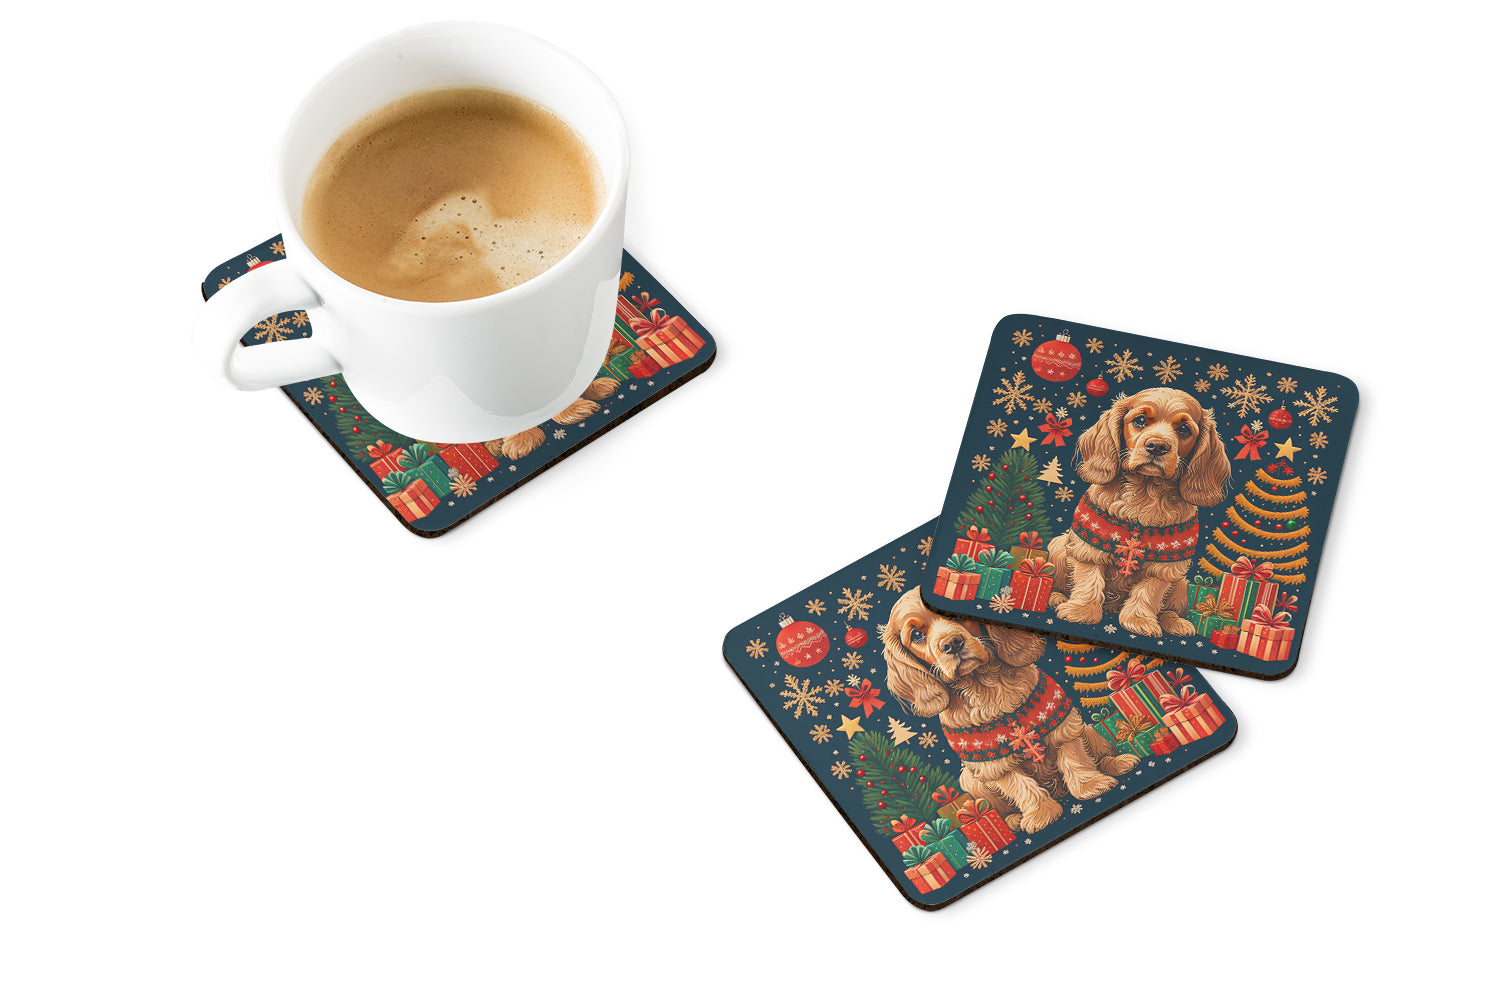 Buy this Cocker Spaniel Christmas Foam Coasters